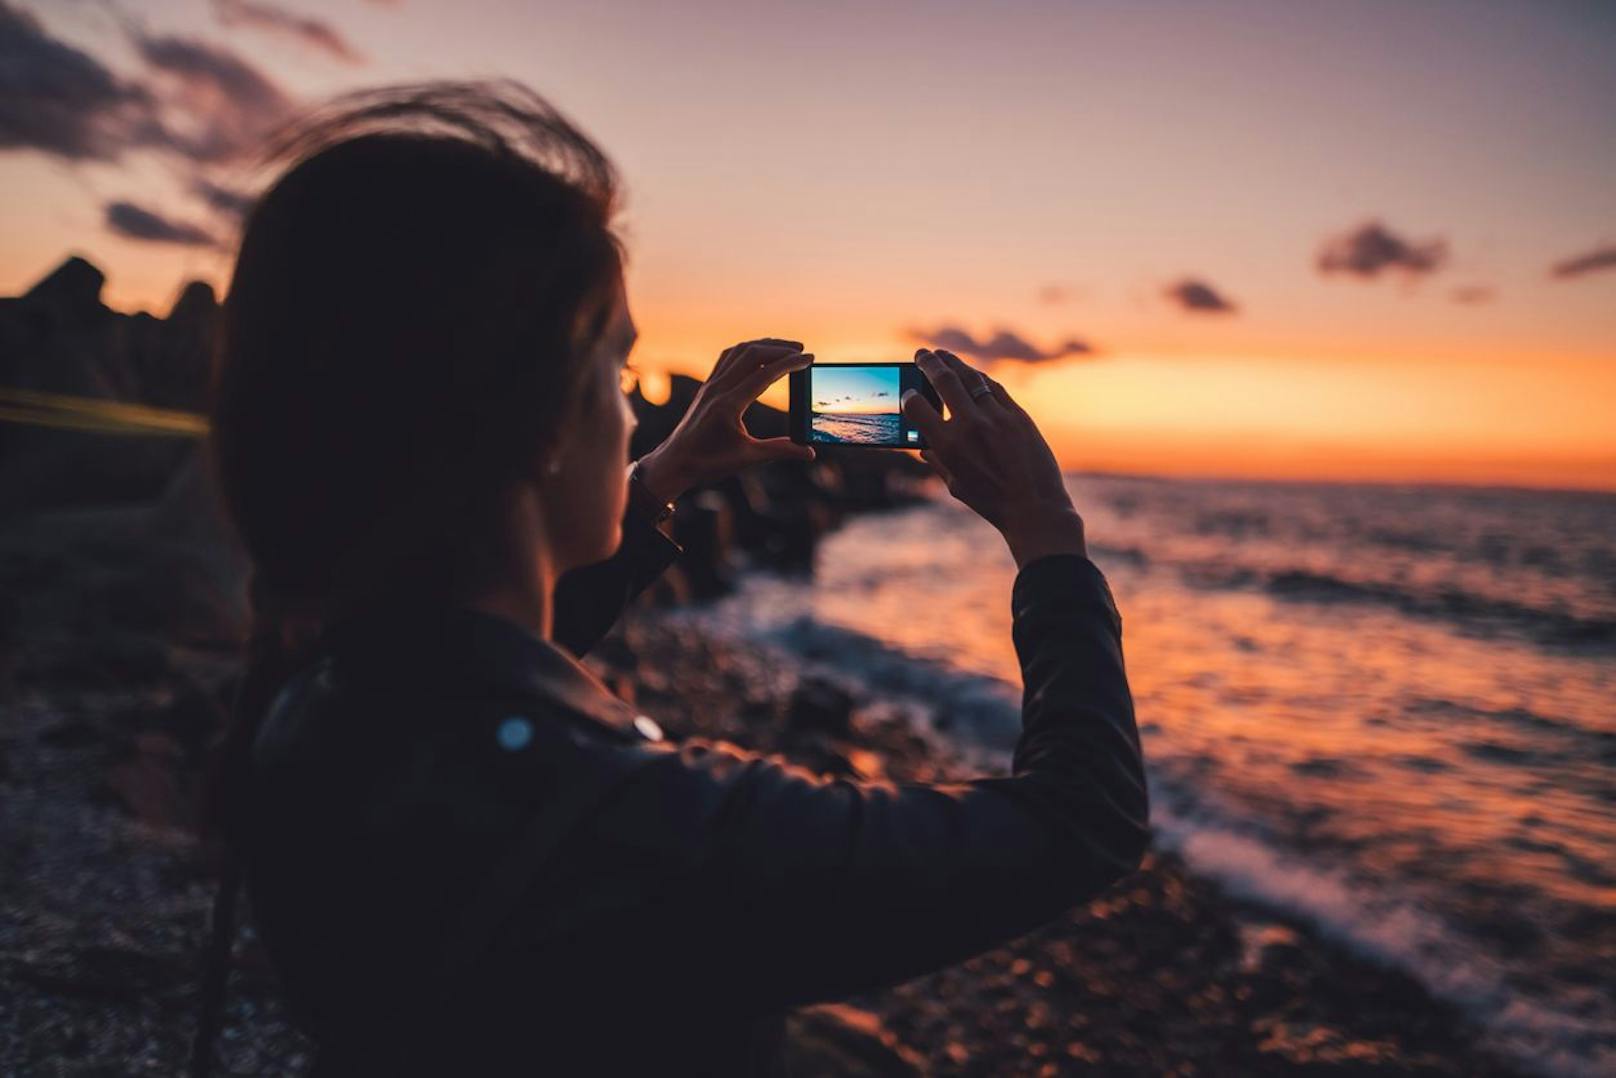 Hör besser auf, Fotos von deinen Urlauben zu posten